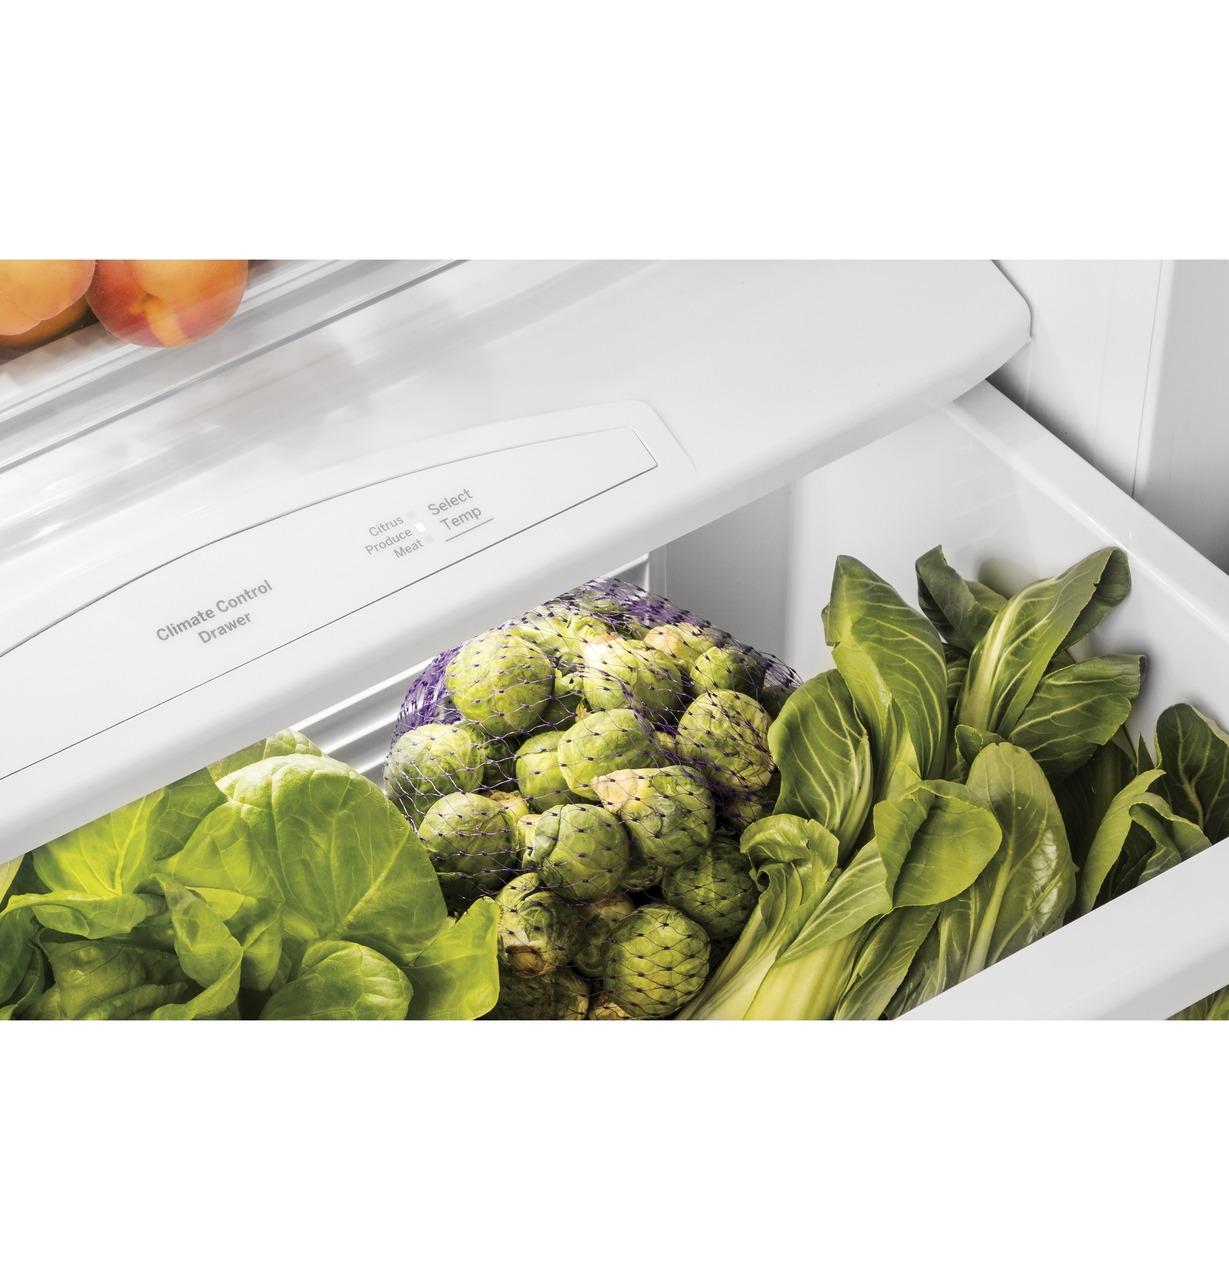 Caf(eback)™ 48" Smart Built-In Side-by-Side Refrigerator with Dispenser